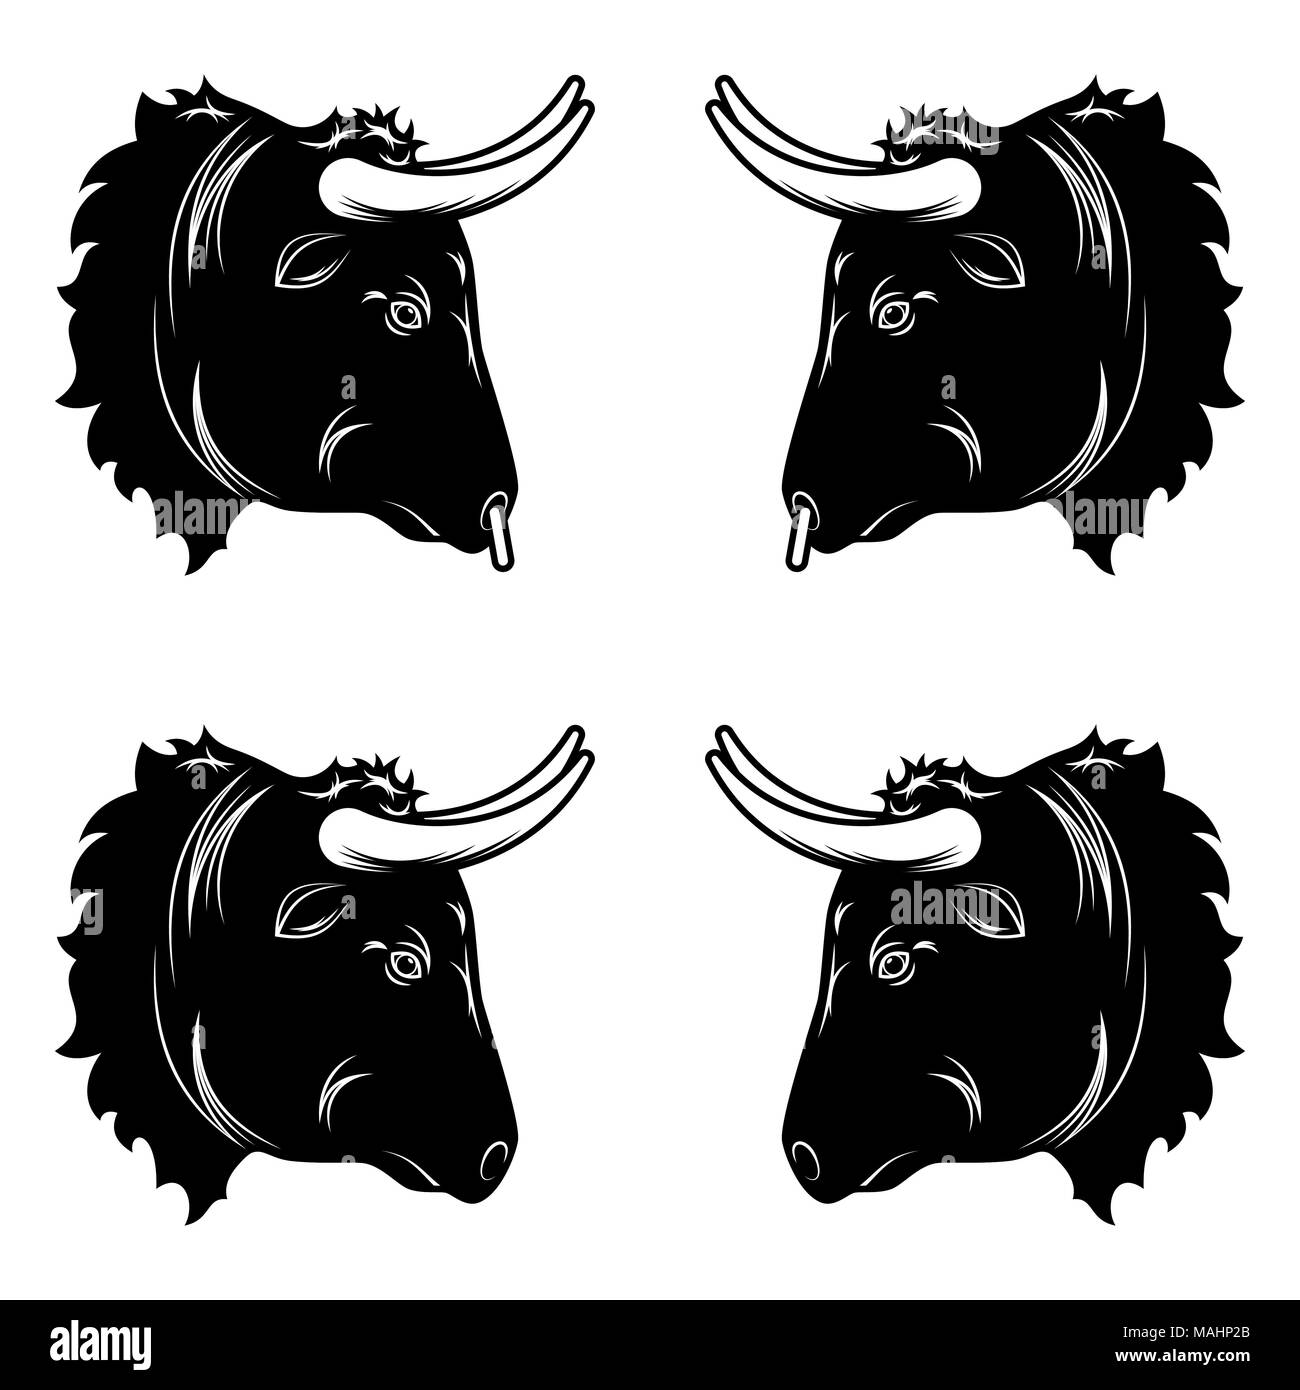 Design stilizzato di testa di toro. Illustrazione Vettoriale di testa di toro in colore nero, con e senza un anello al naso. Vettore silhouette bull Illustrazione Vettoriale